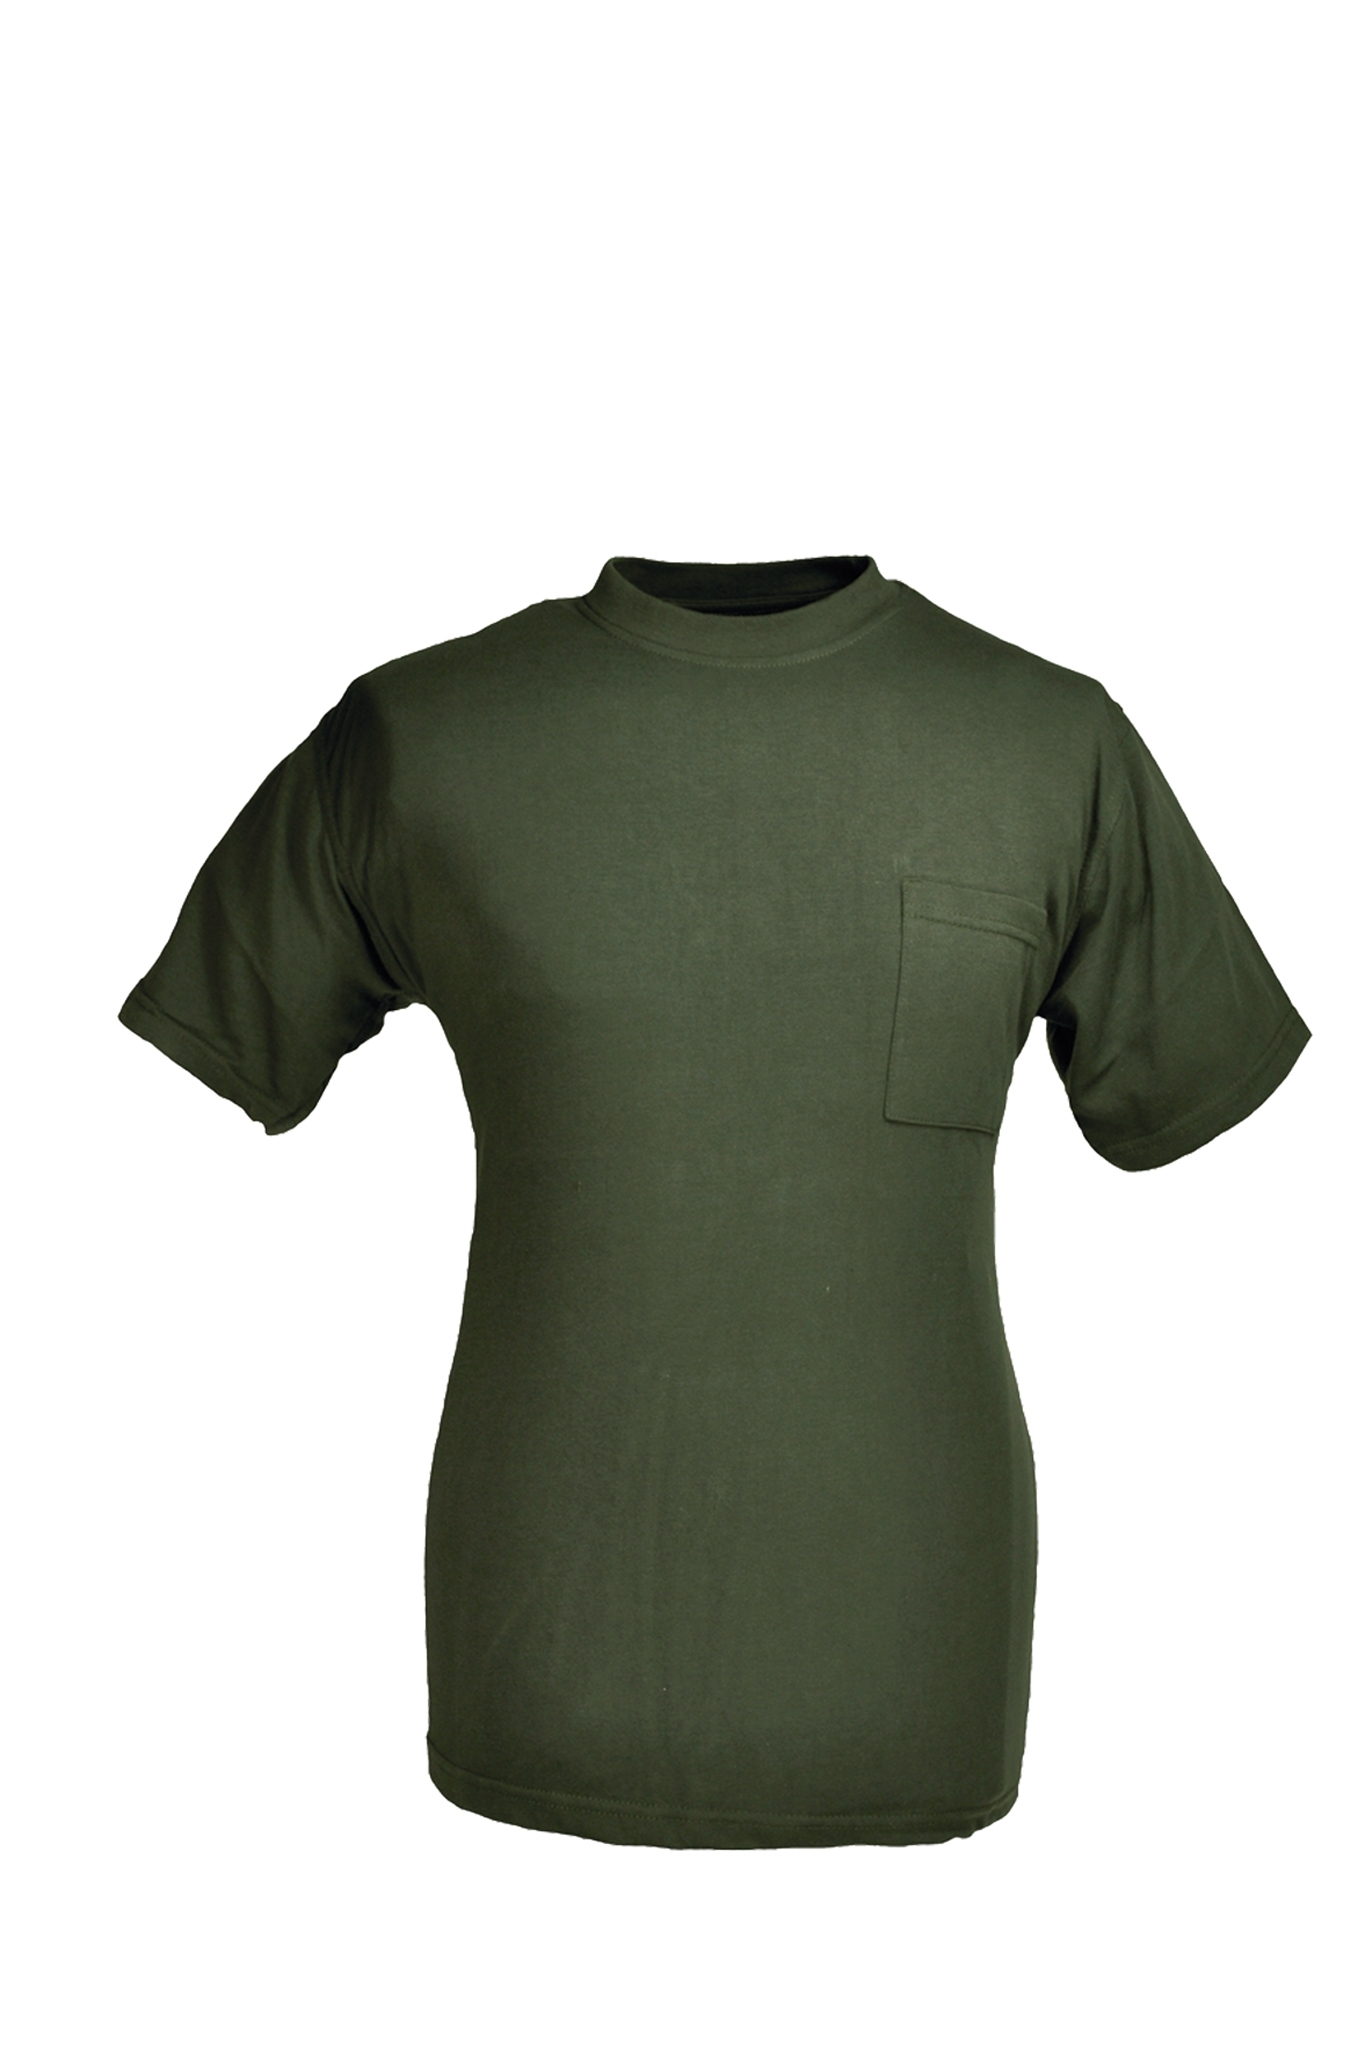 Rundhals T-Shirt oliv Gr.XL 10227843